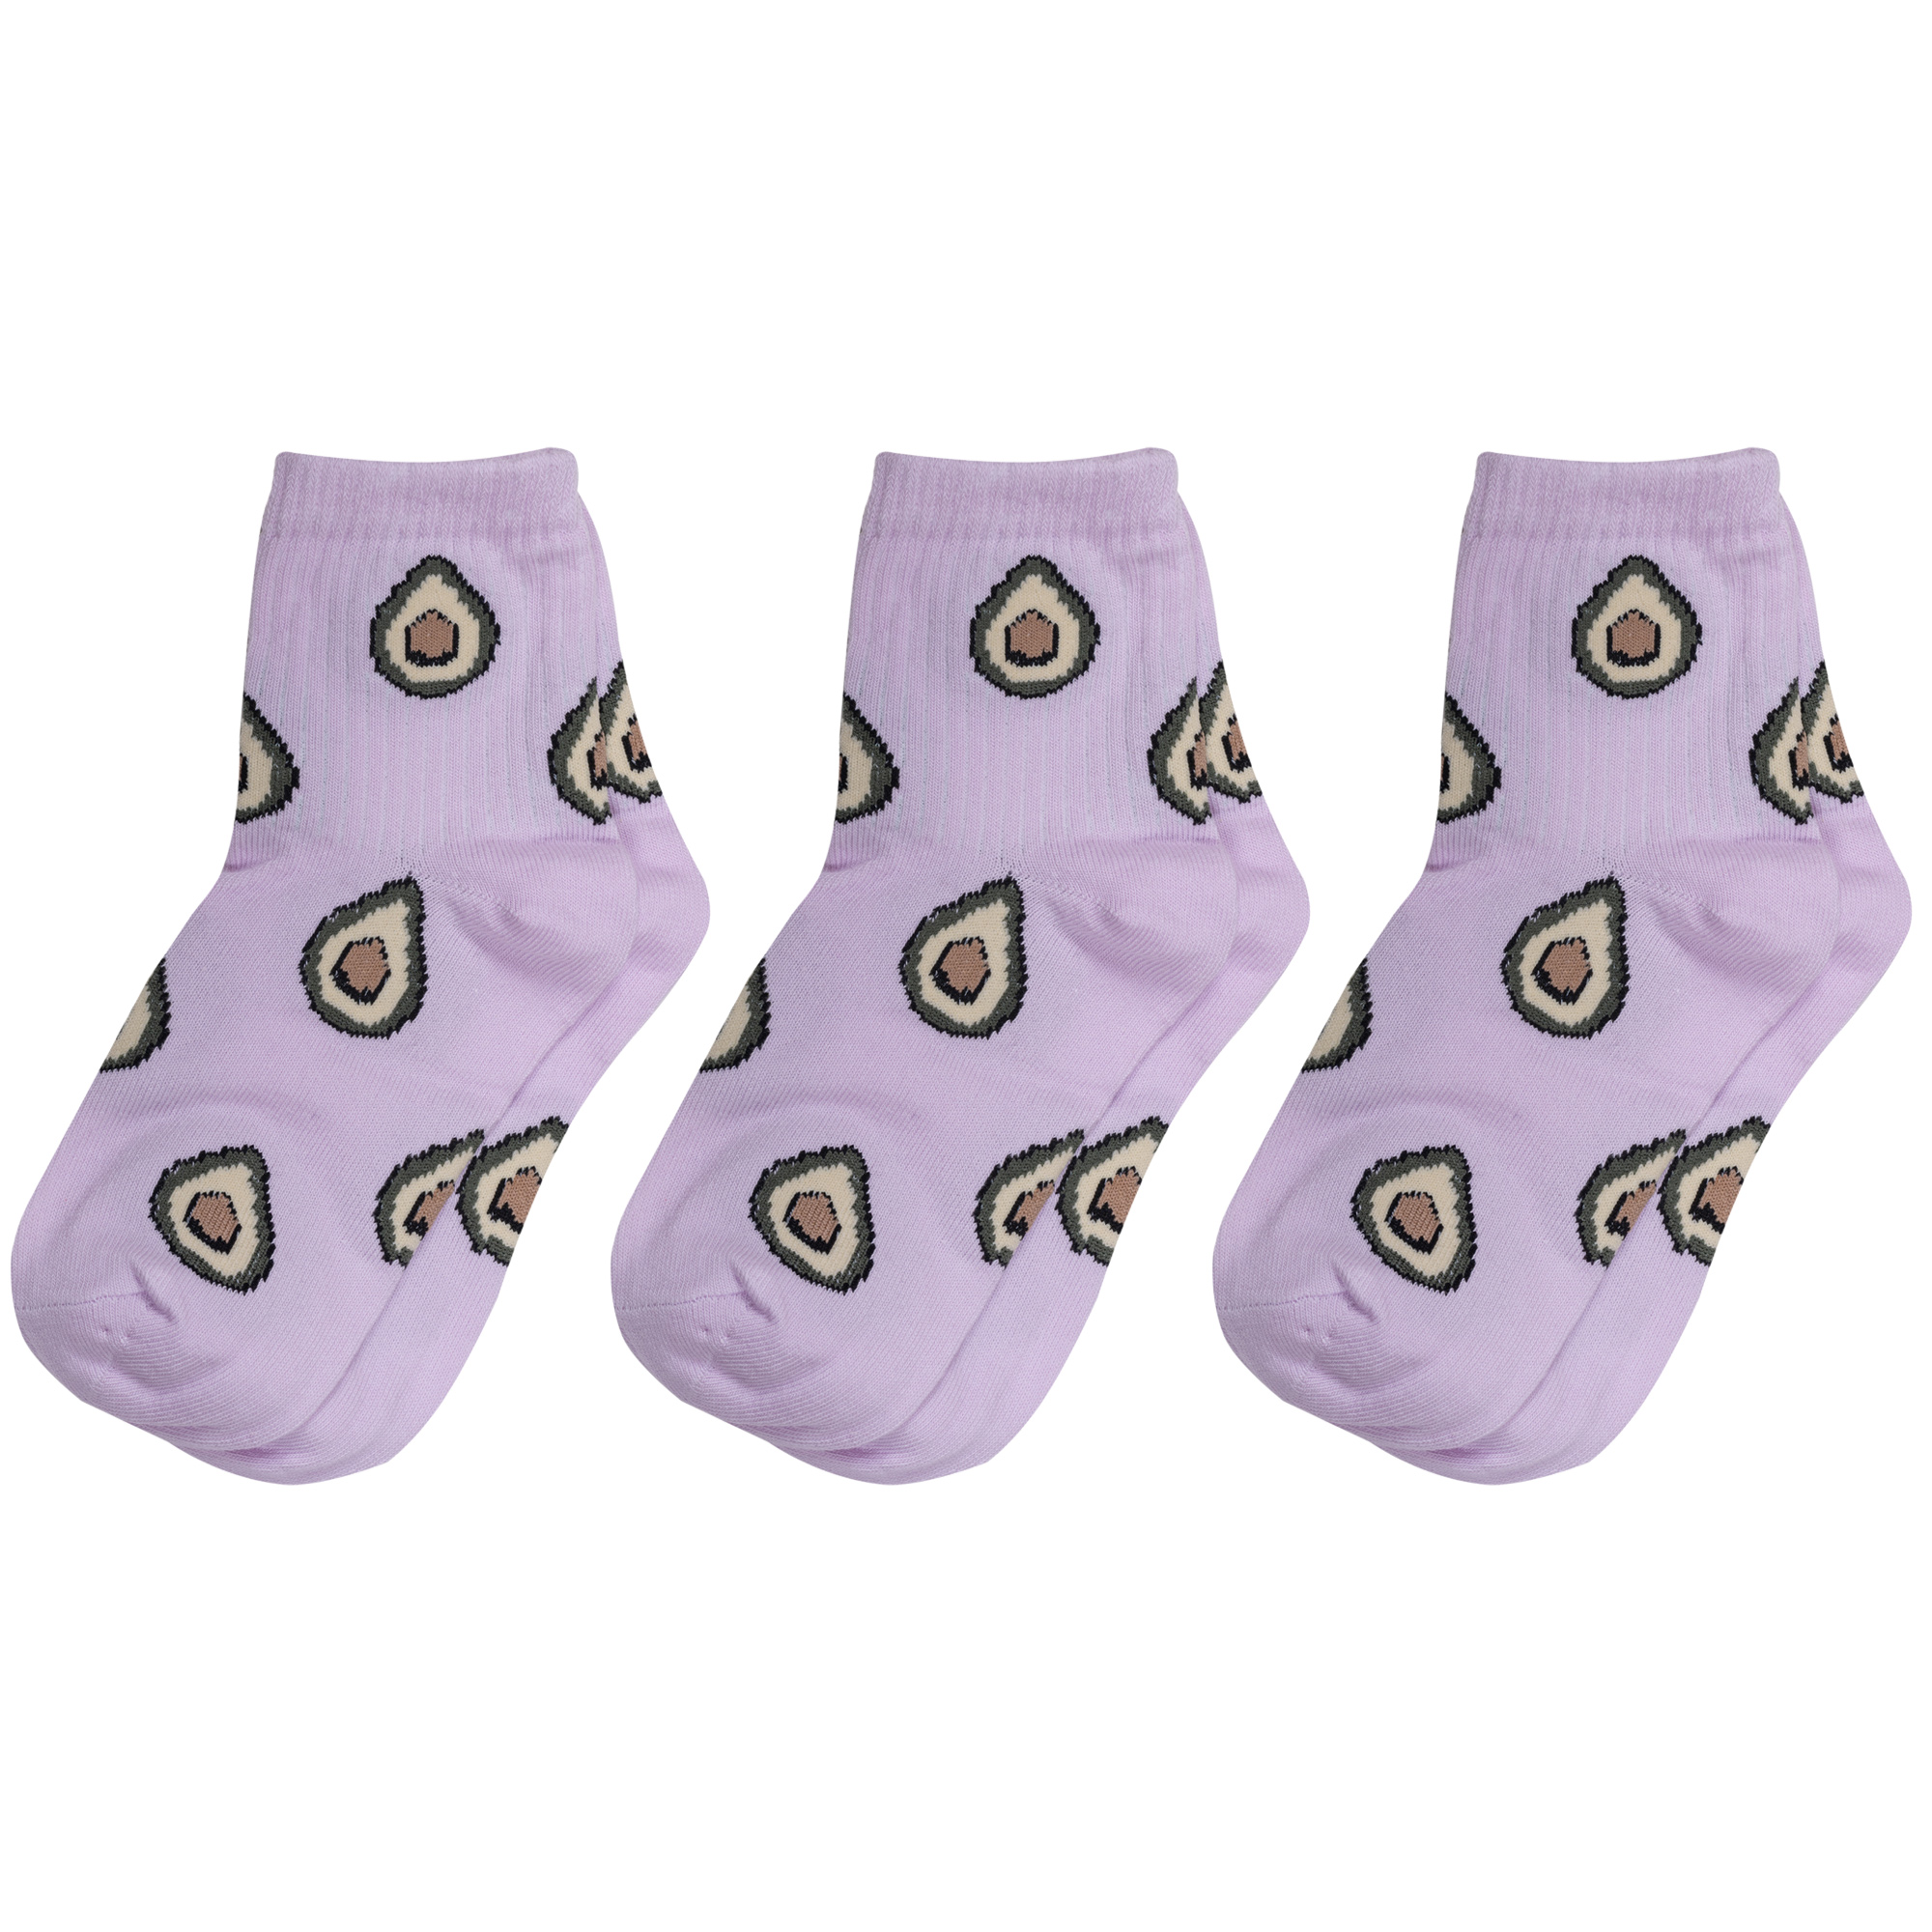 Носки для девочек Альтаир 3-А223 цв. фиолетовый; зеленый; бежевый; коричневый р. 30 rrampa 180 al зеленый фиолетовый